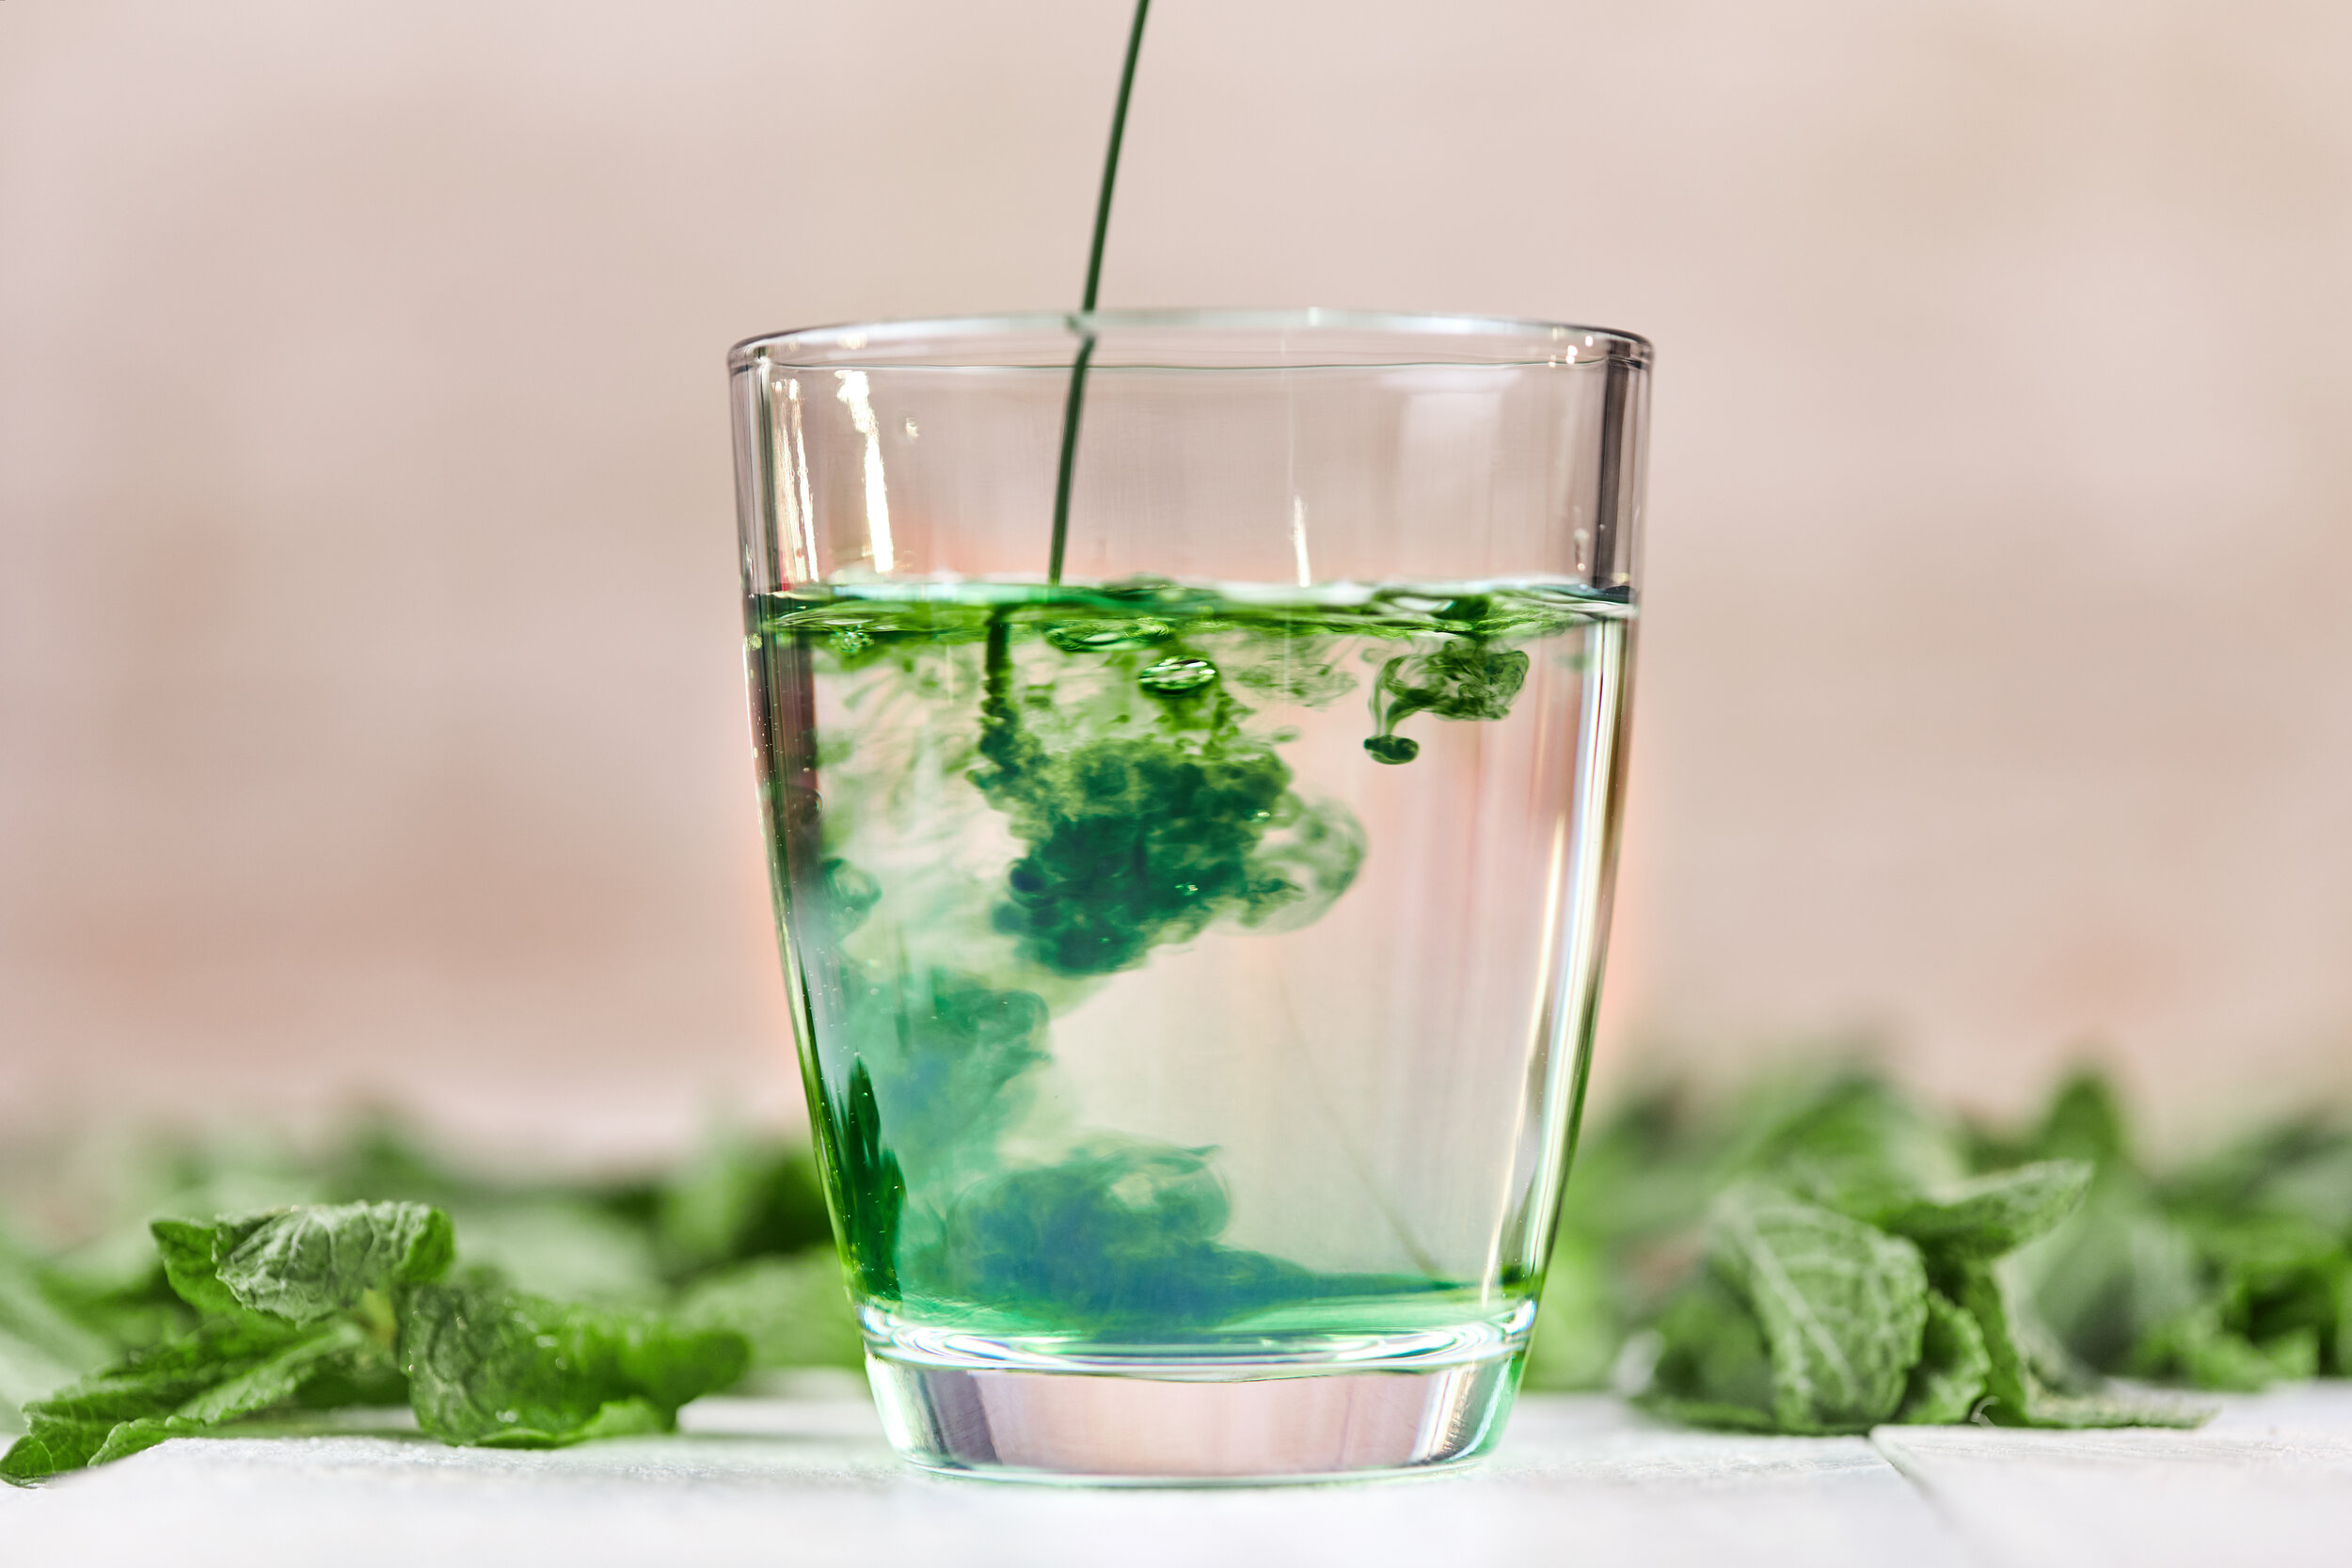 Стакан с зеленой водой. Хлорофилл. Хлорофилл жидкий в стакане. Зелень в стакане с водой. Зеленая жижа в стакане.